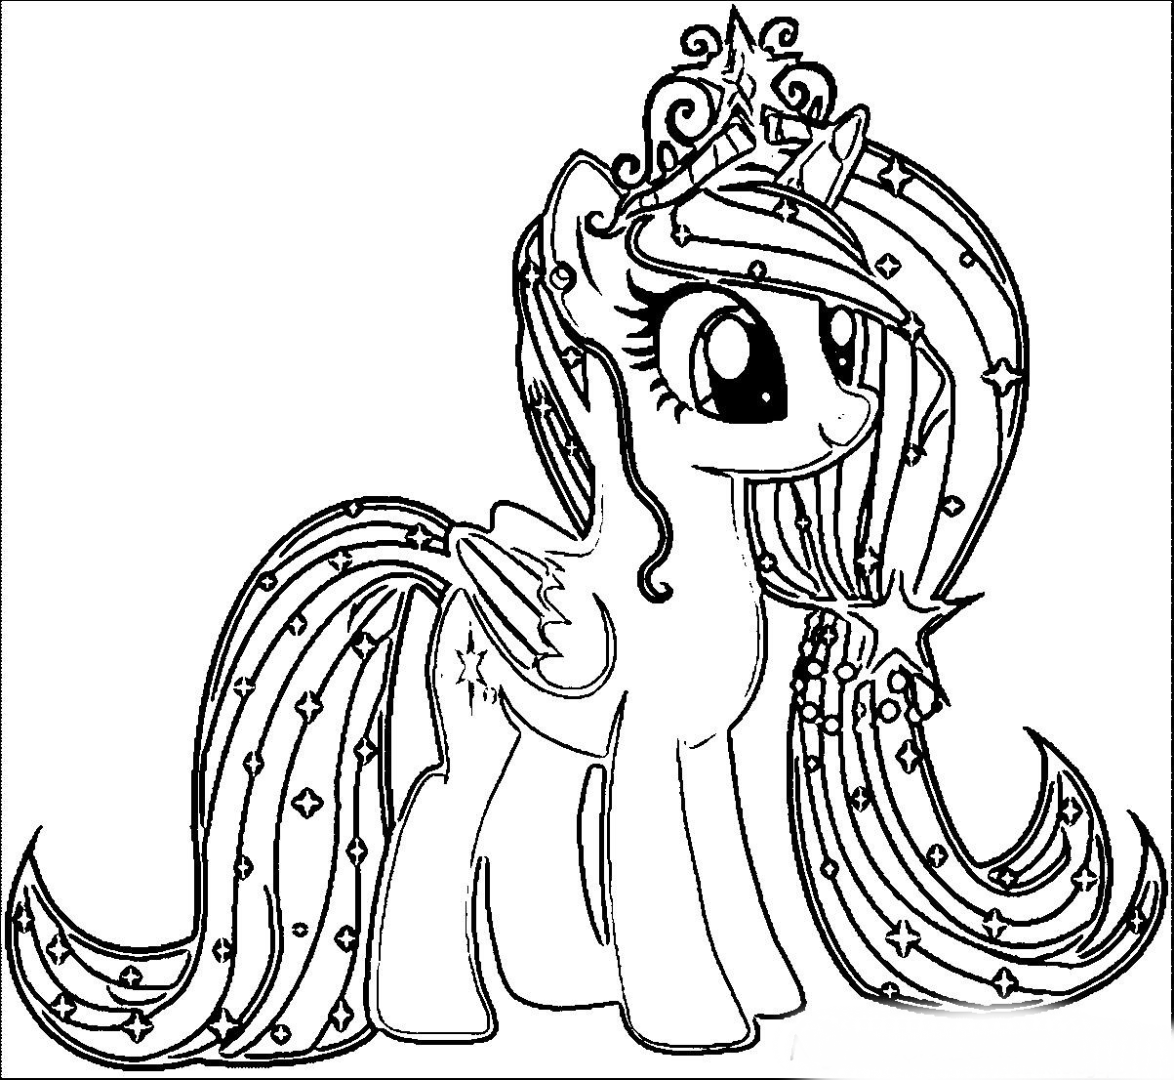 Pony color. My little Pony раскраска. Раскраска понивиль принцессы. My little Pony принцессы раскраска. Раскраска пони Рарити принцесса.